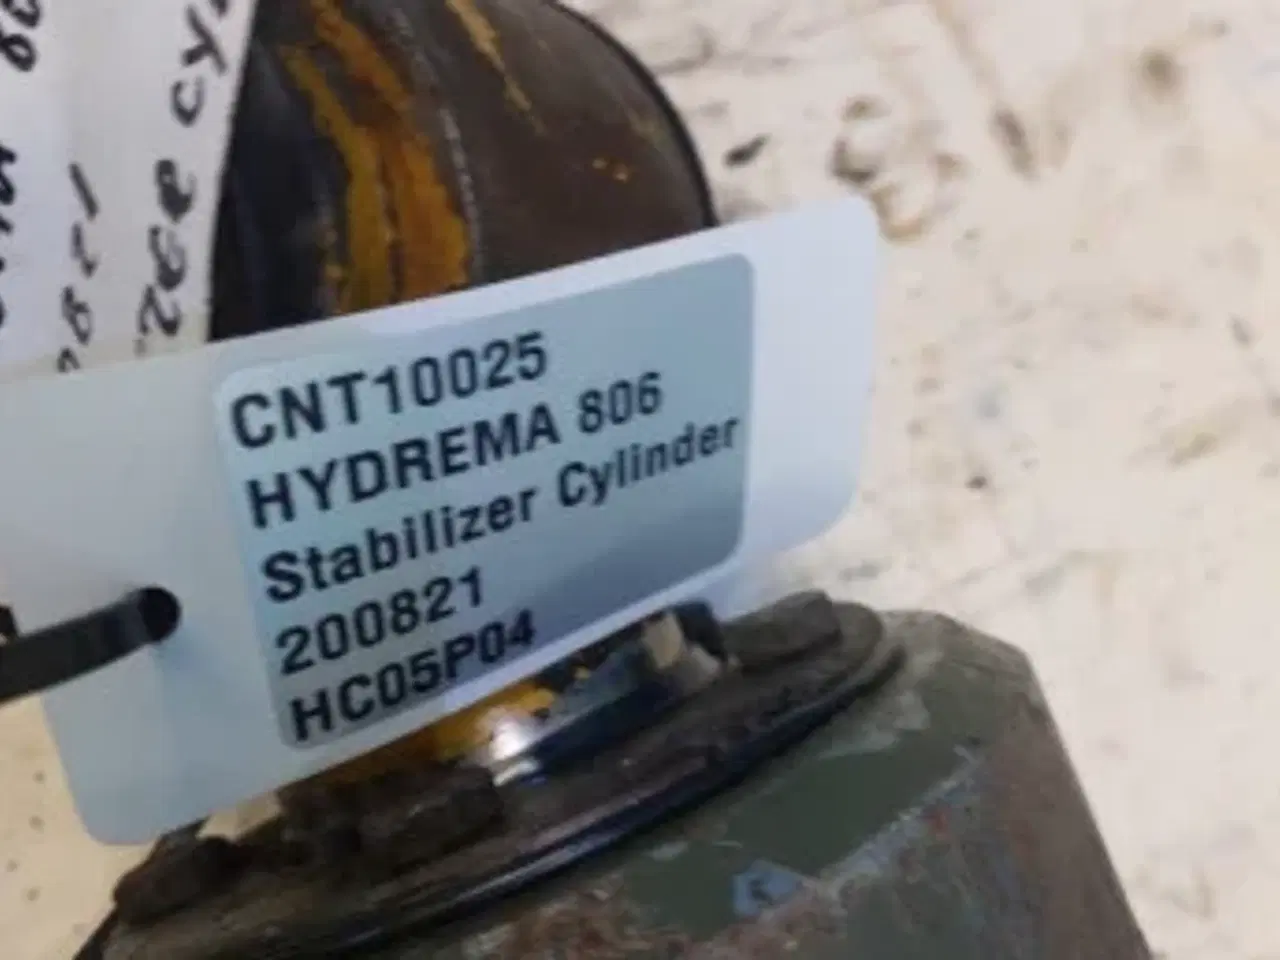 Billede 8 - Hydrema 806 Stabilizer Cylinder 200821